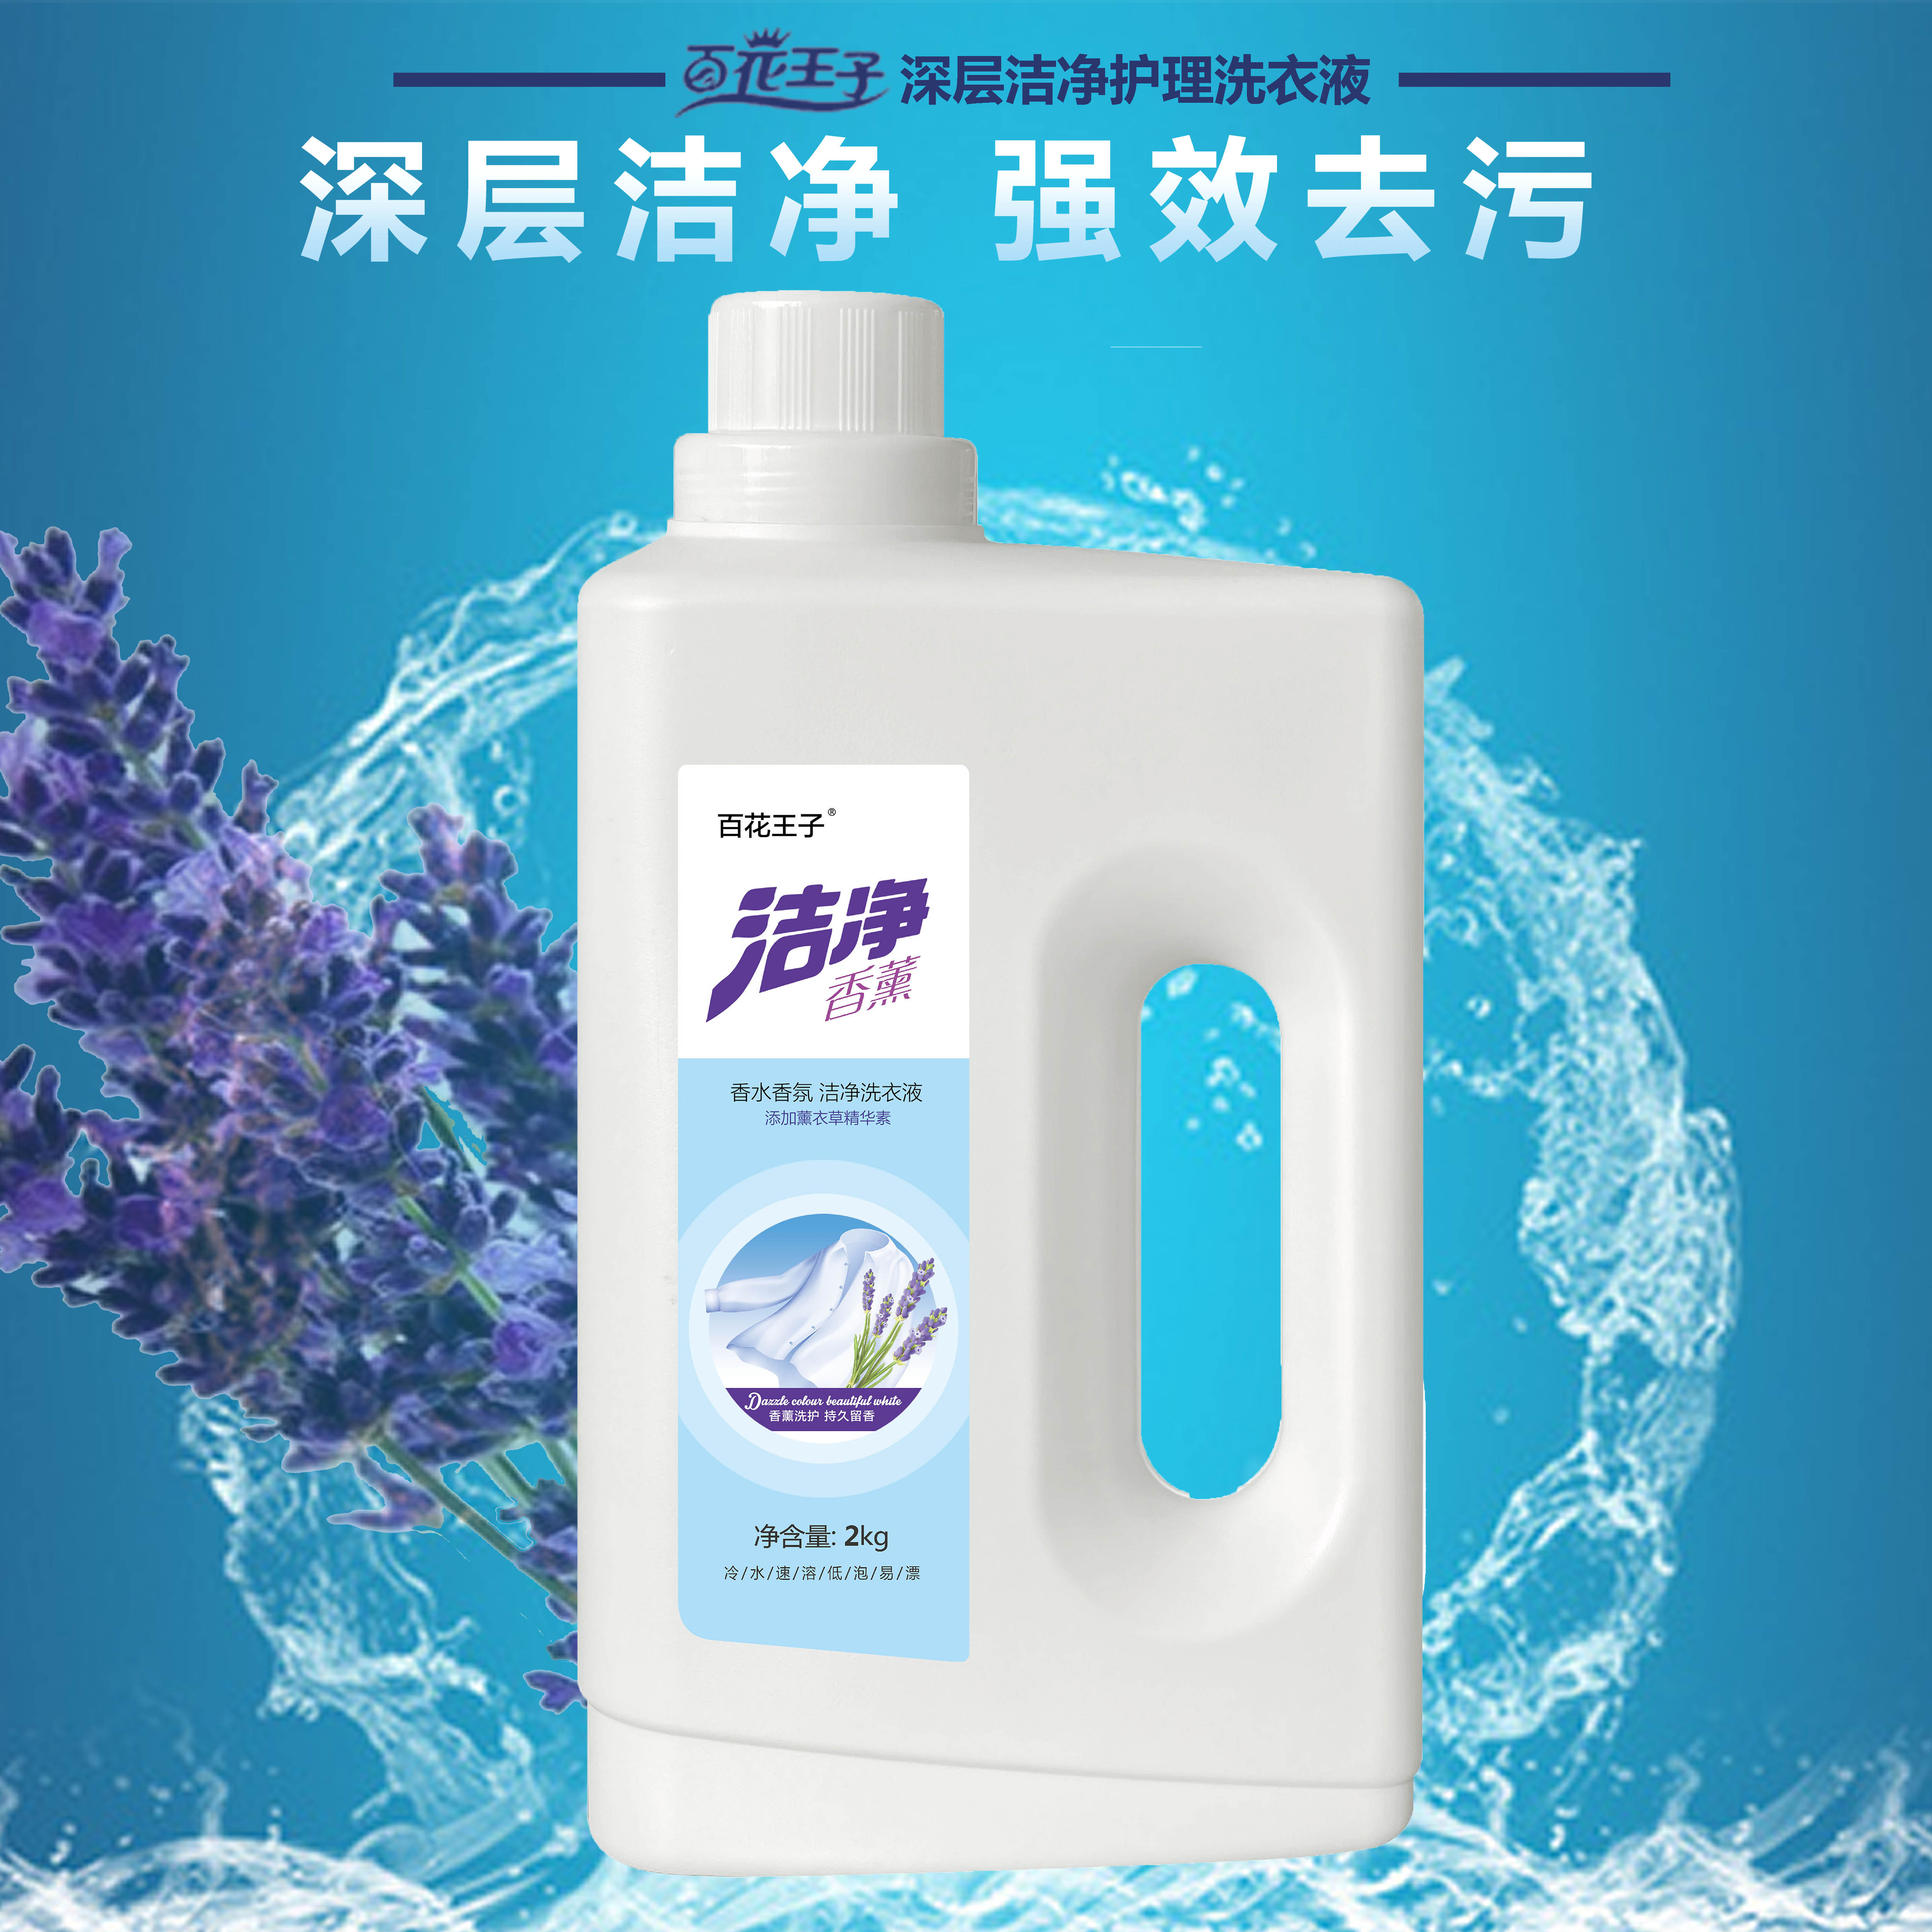 郑州洗衣液代加工生产厂家如何提高市场竞争力